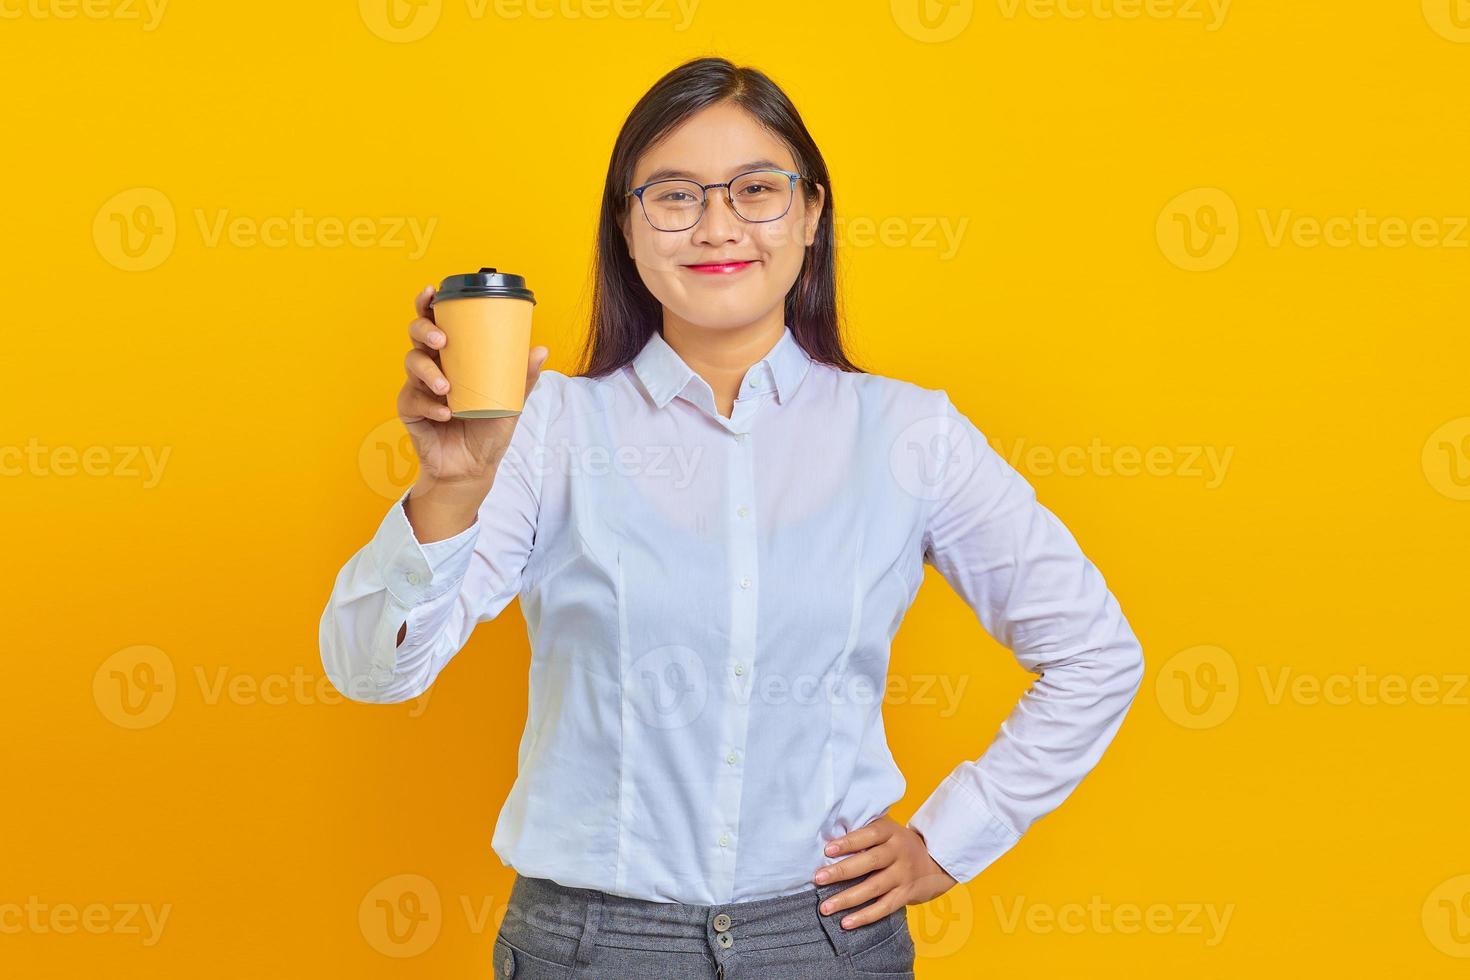 foto van een glimlachende en vrolijke Aziatische zakenvrouw die een wit overhemd draagt met een vers gekocht kopje koffie op een gele achtergrond